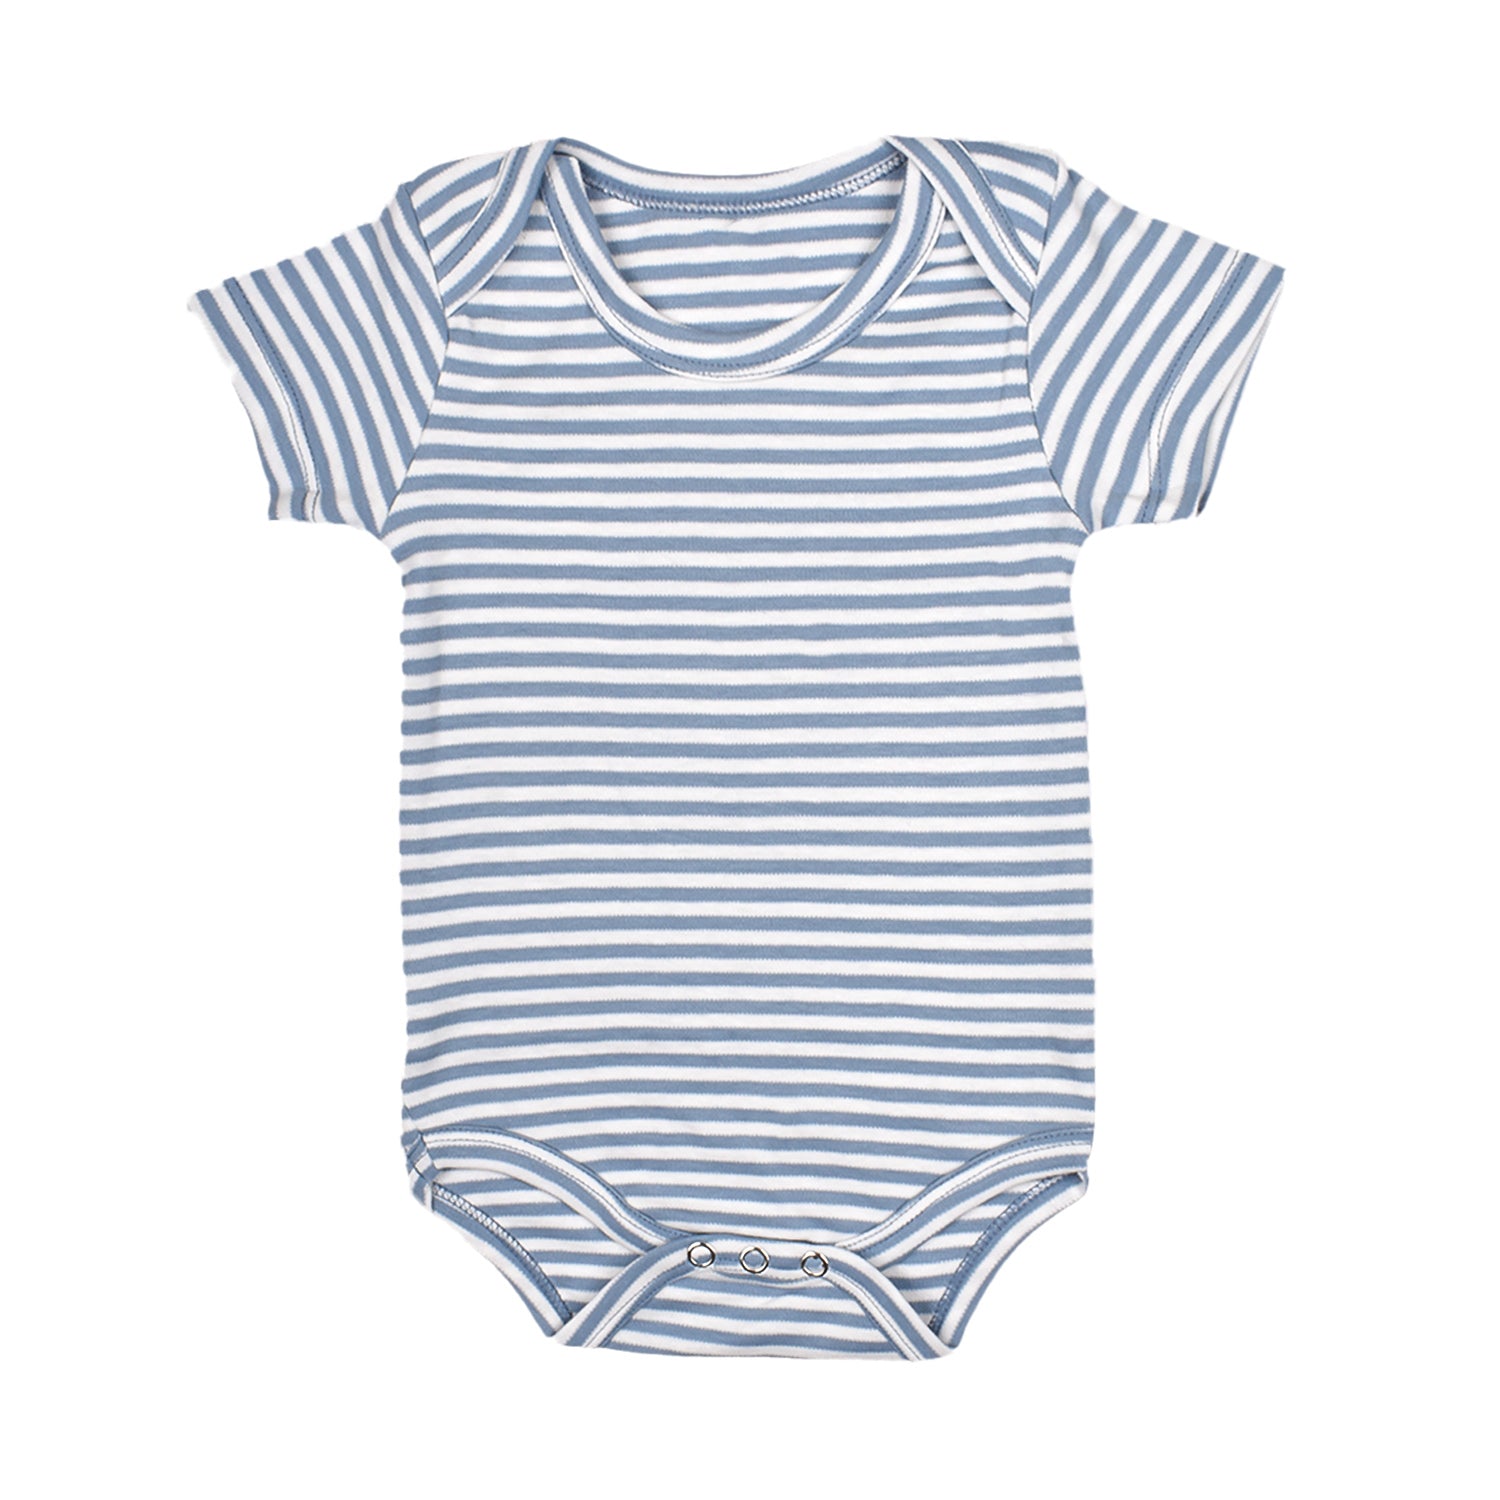 Baby Soft Organic cotton Unisex  Onesie/BodySuit - Navy, Sky Blue & Dark Blue Striped - Pack of 3